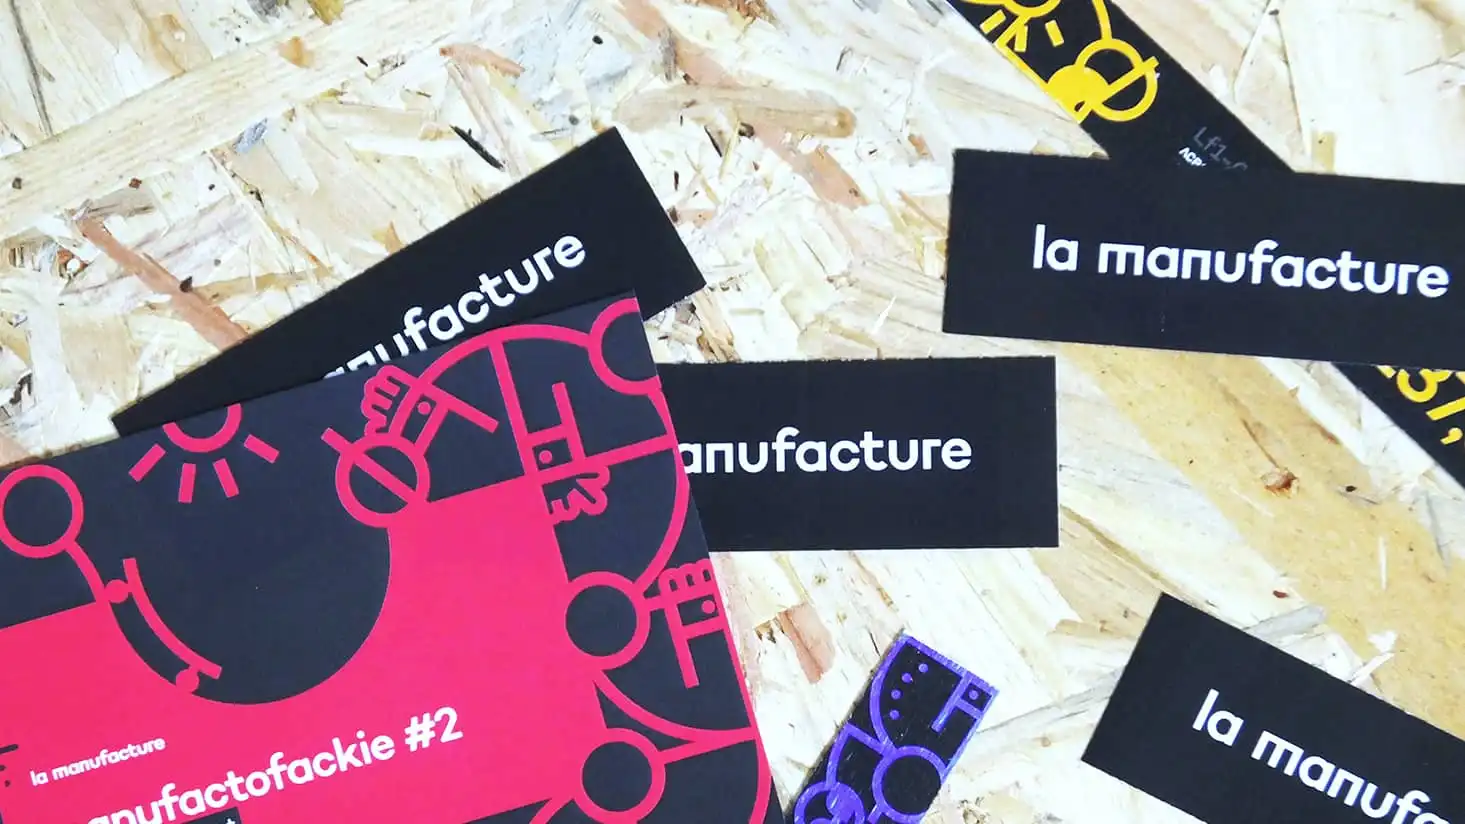 La Manufacture's various sticker design